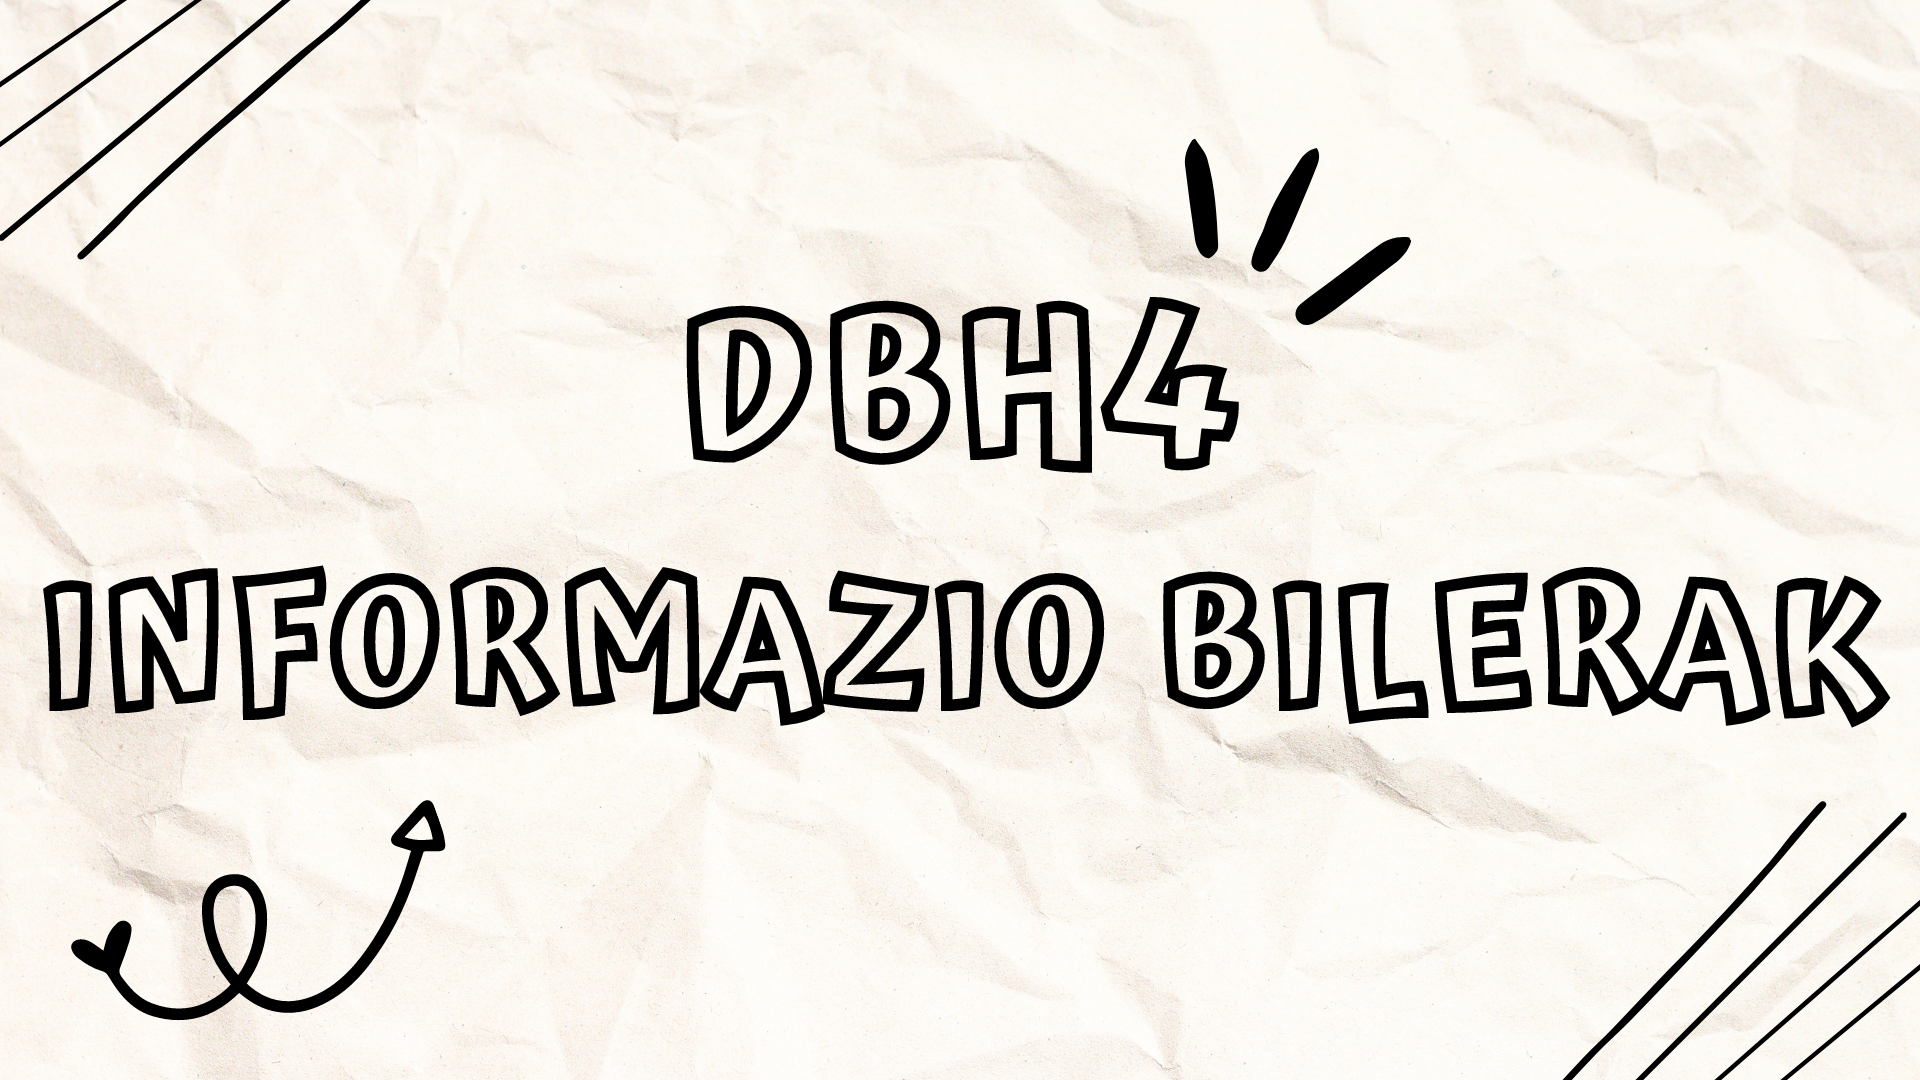 DBH4ko informazio-bilerak